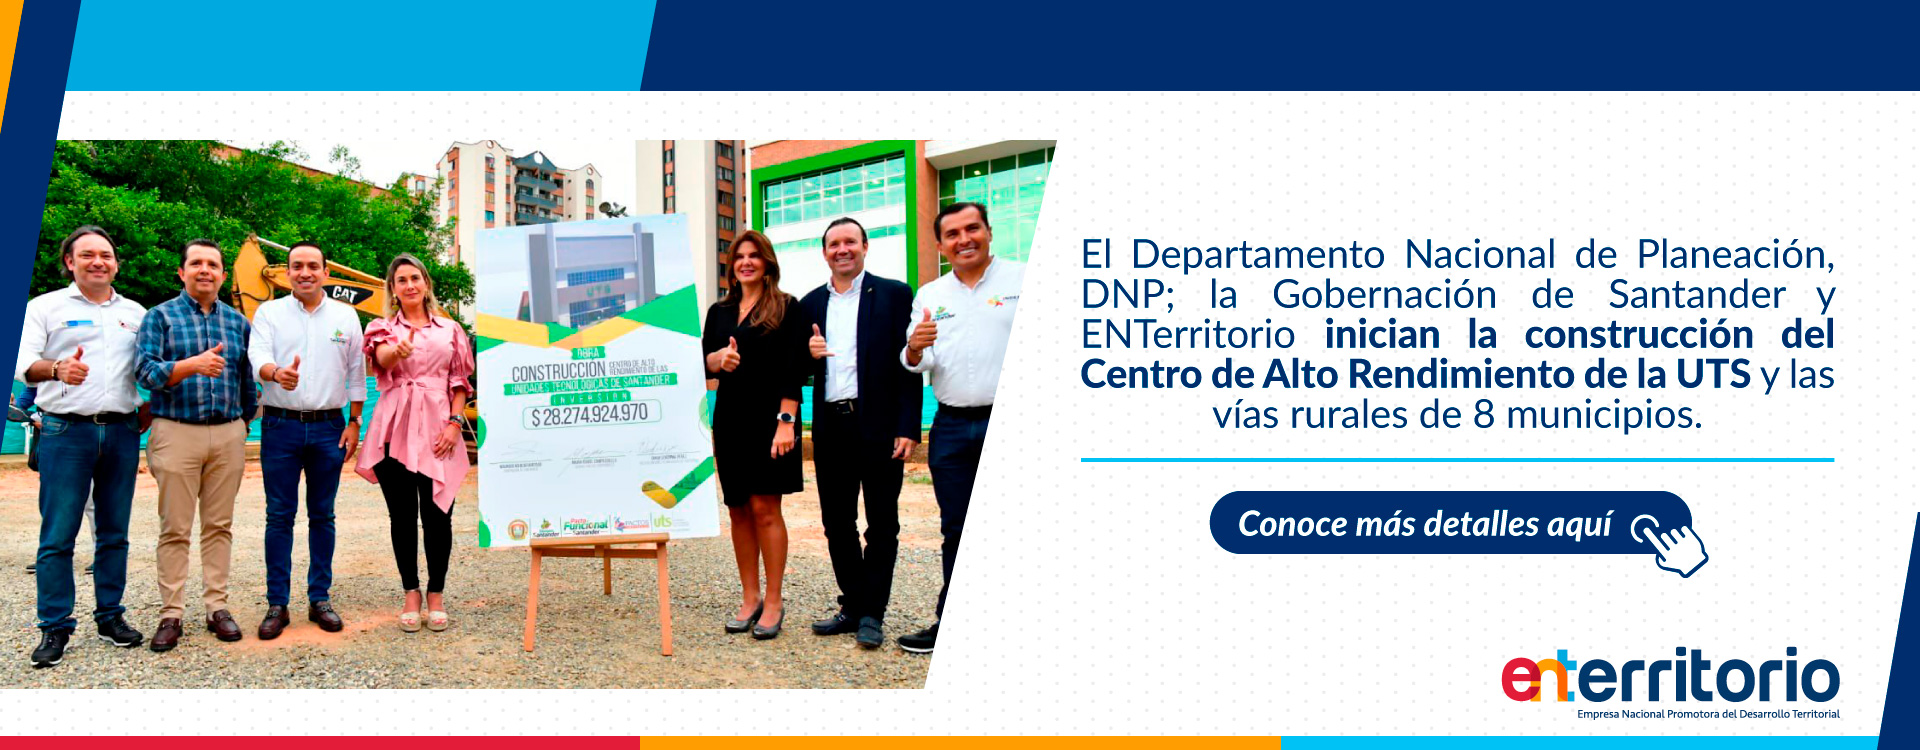 DNP, Gobernación de Santander y ENTerritorio inician la construcción del Centro de Alto Rendimiento de la UTS y las vías rurales de 8 municipios